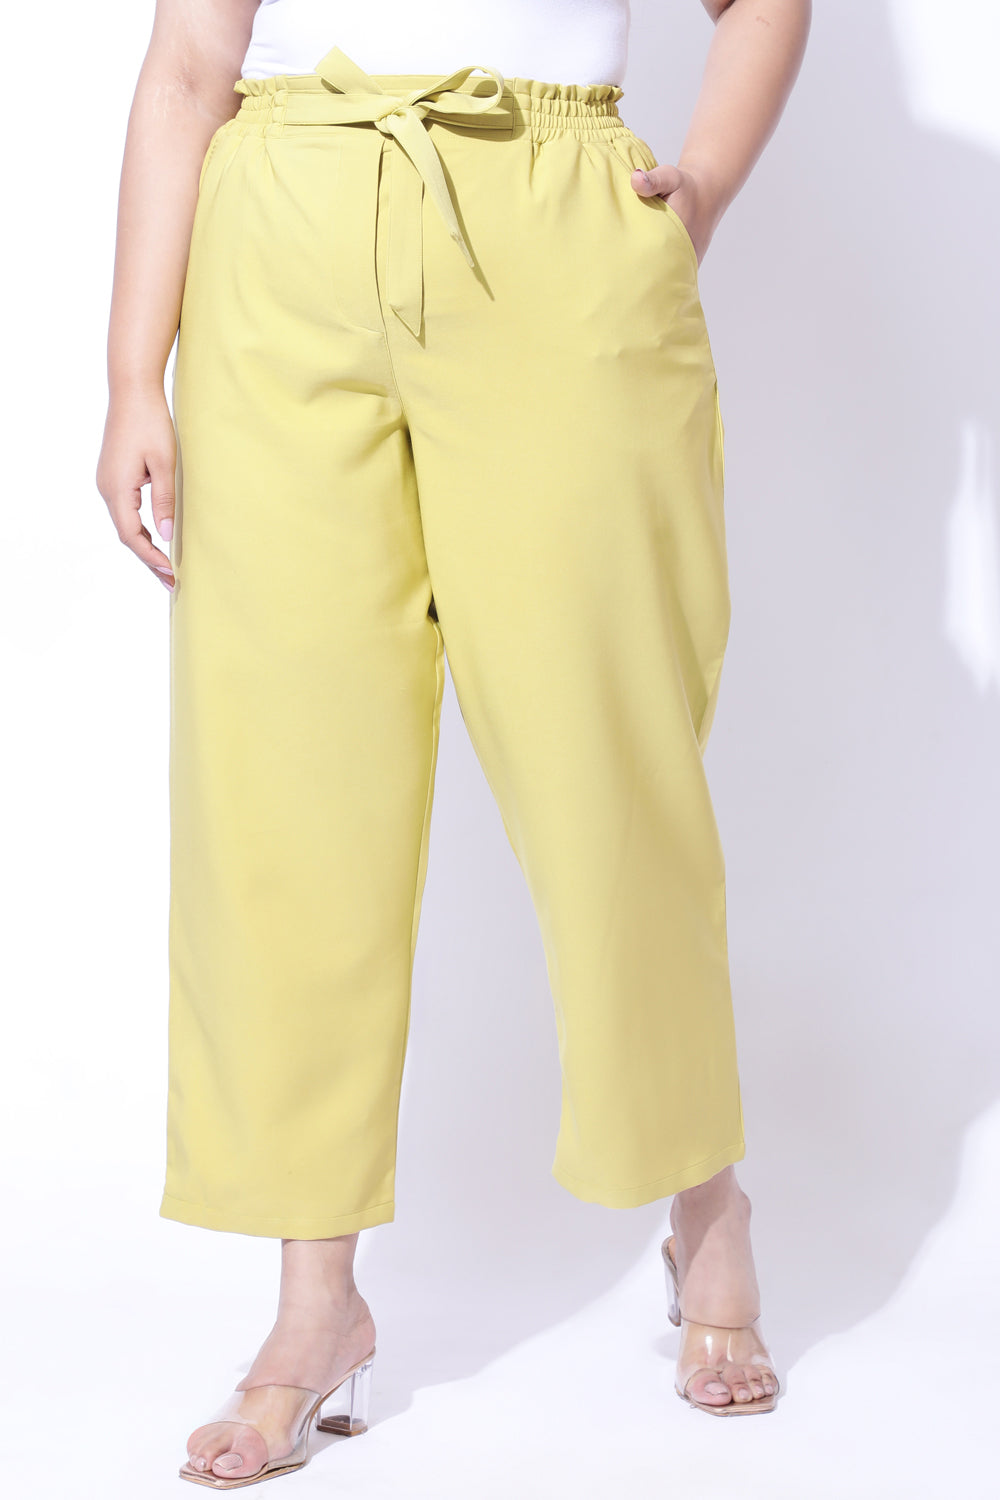 Plus Size Yellow Pants